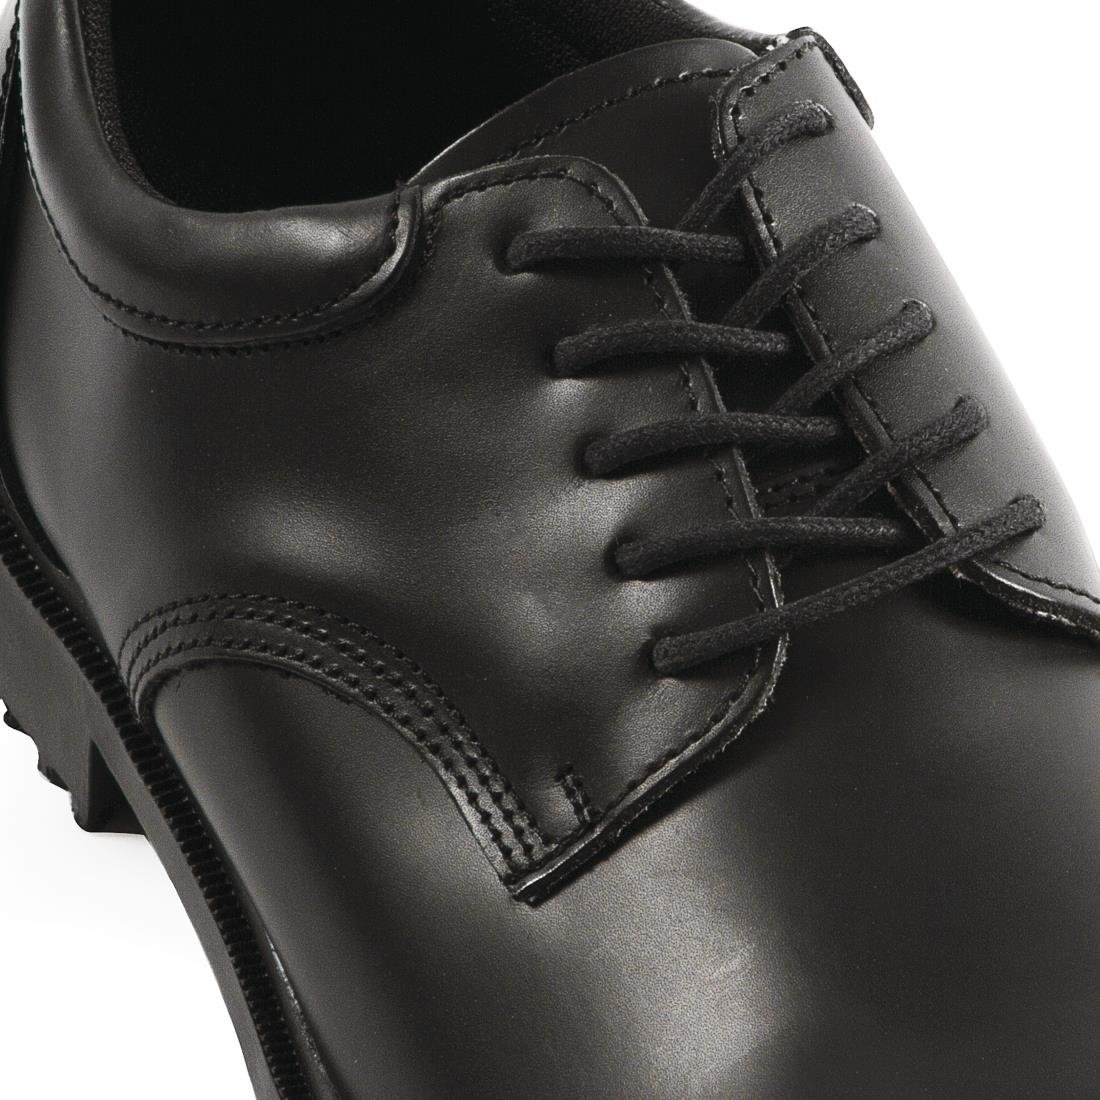 B110-46 Shoes For Crews Mens Dress Shoe Size 46